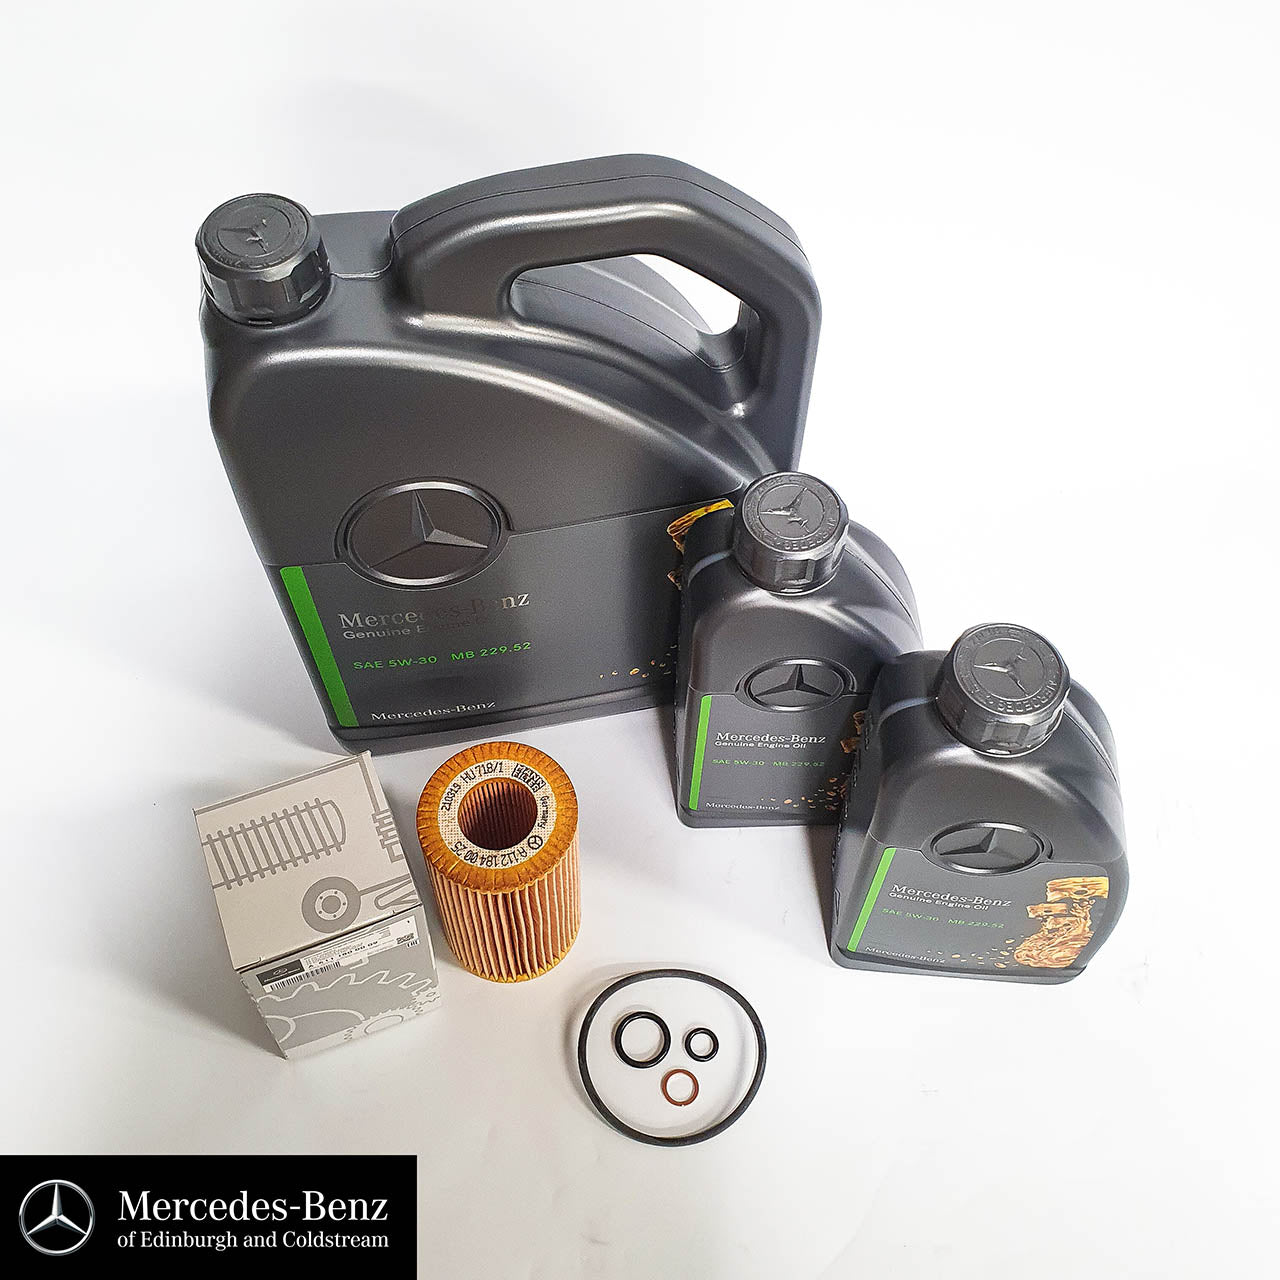 Genuine Mercedes-Benz service kit for OM646 Diesel Engine